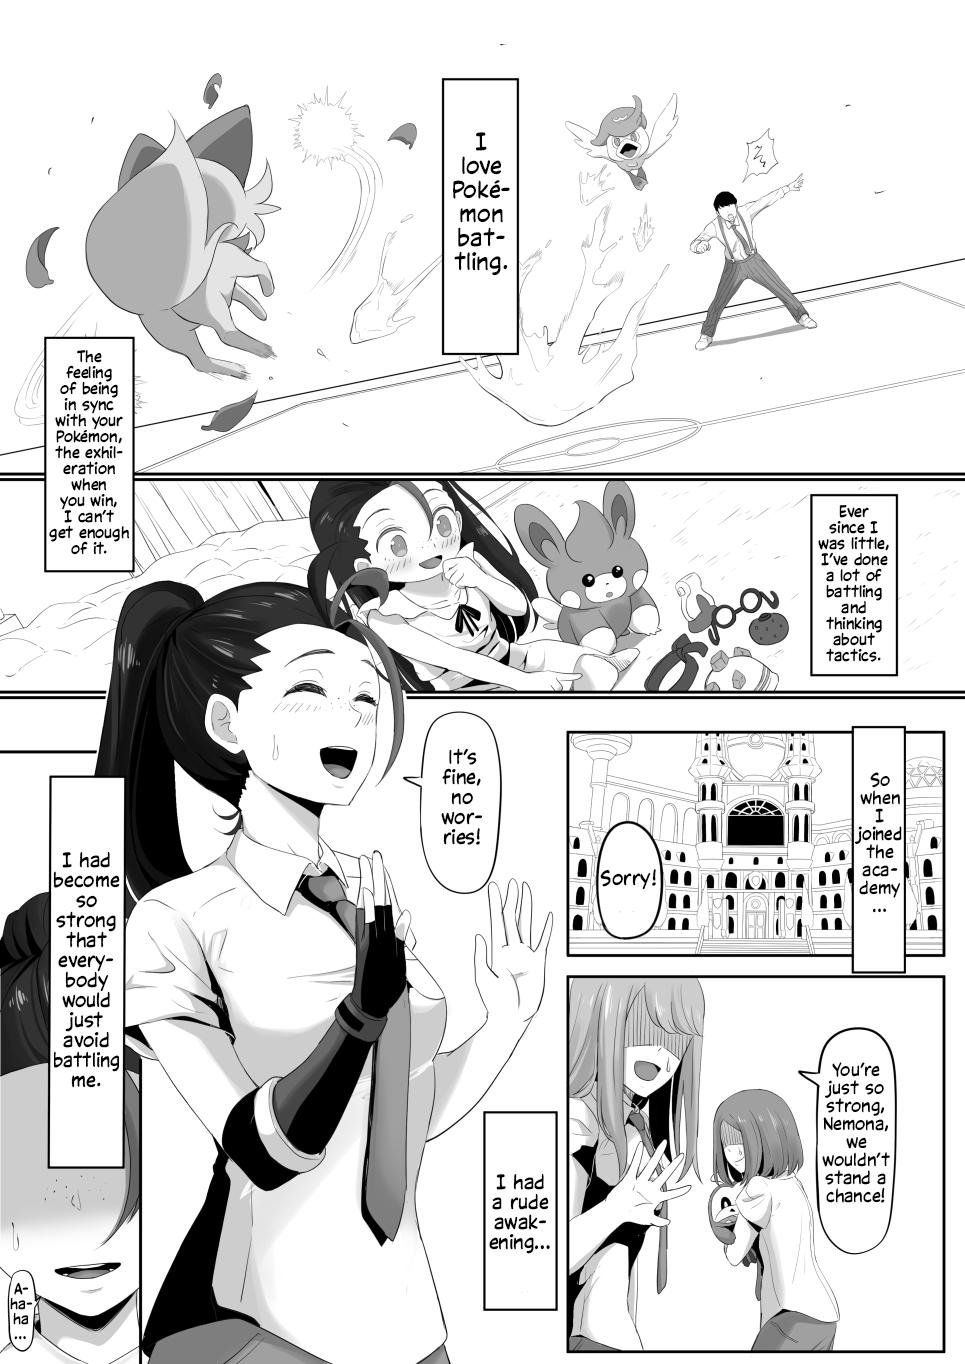 Matures Pokémon Nemo no Ero Manga - Pokemon | pocket monsters Parody - Page 2